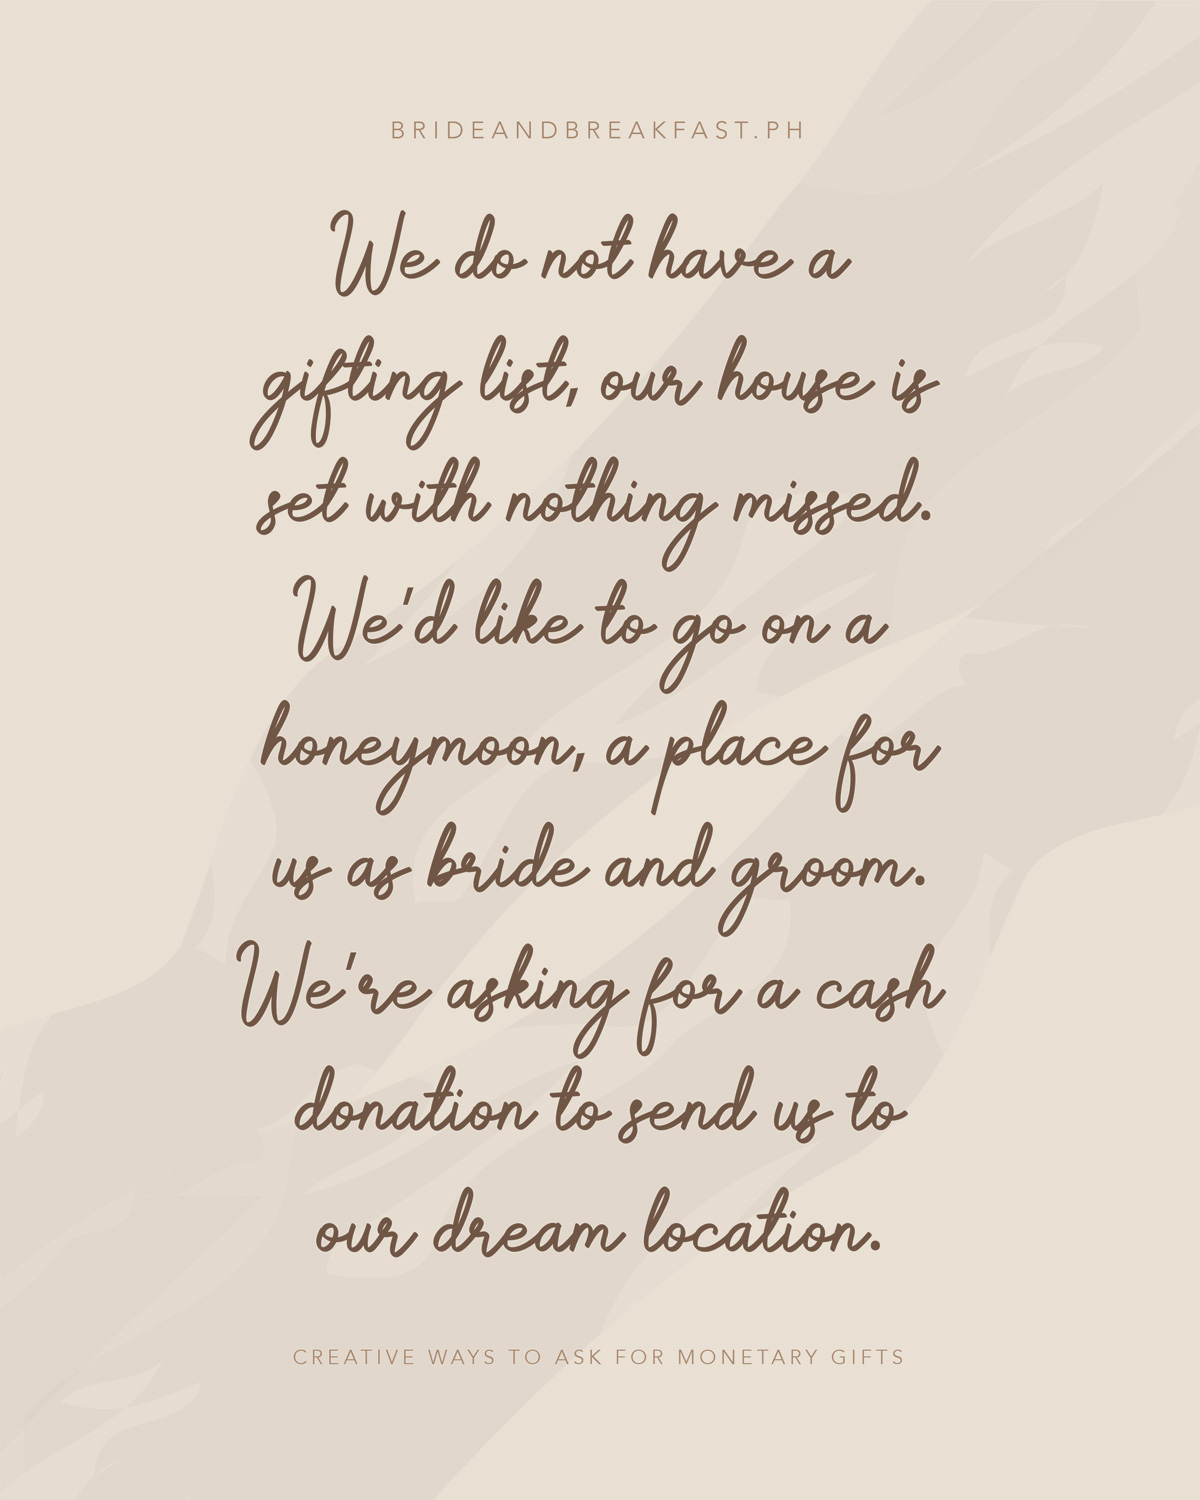 우리는 선물 목록이 없습니다,우리 집은 놓친 아무것도 설정됩니다. 우리는 신혼 여행에 신부와 신랑으로 우리를 위해 장소를 가고 싶습니다. 우리는 우리의 꿈의 위치로 우리를 보내 현금 기부를 요구하고 있습니다.